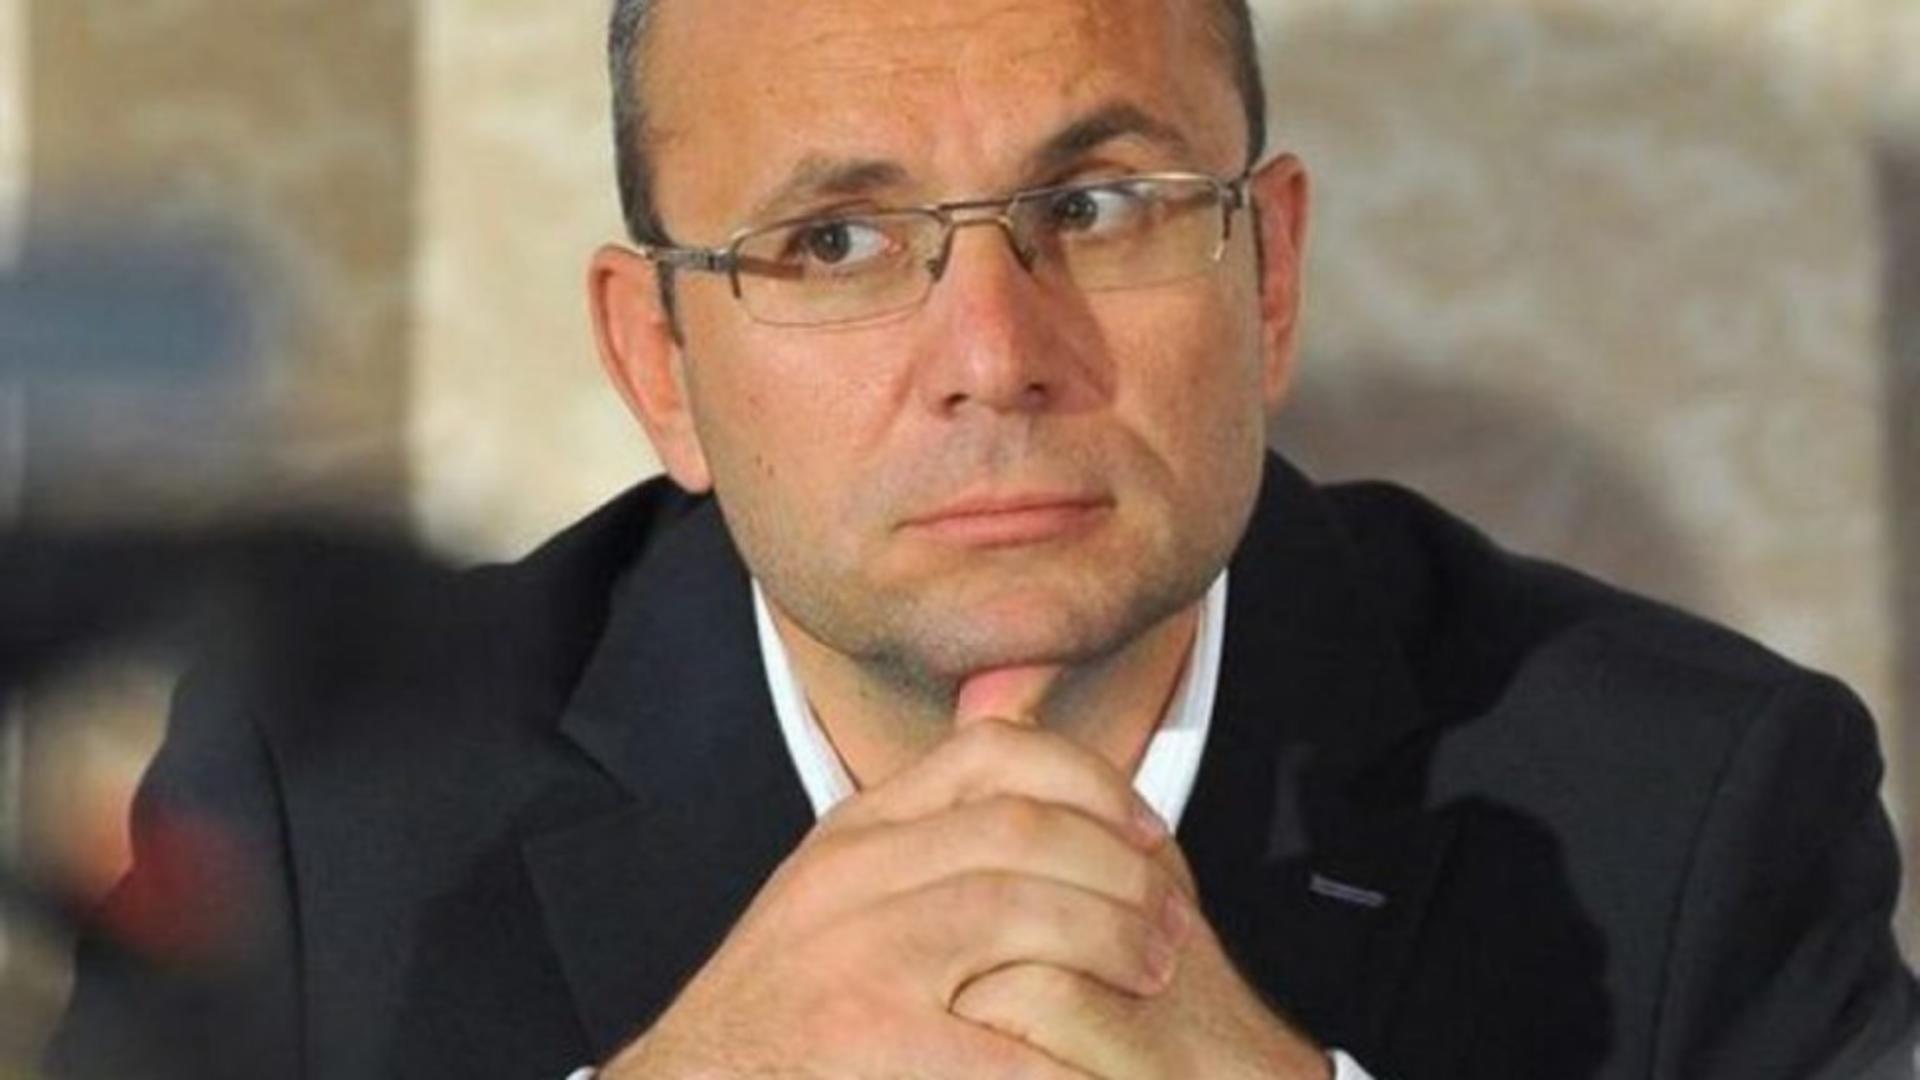 Gușă: Nistorescu se autodenunță ca fiind tovarăș cu securiștii Coldea și Rogojan, toți din armata roninilor